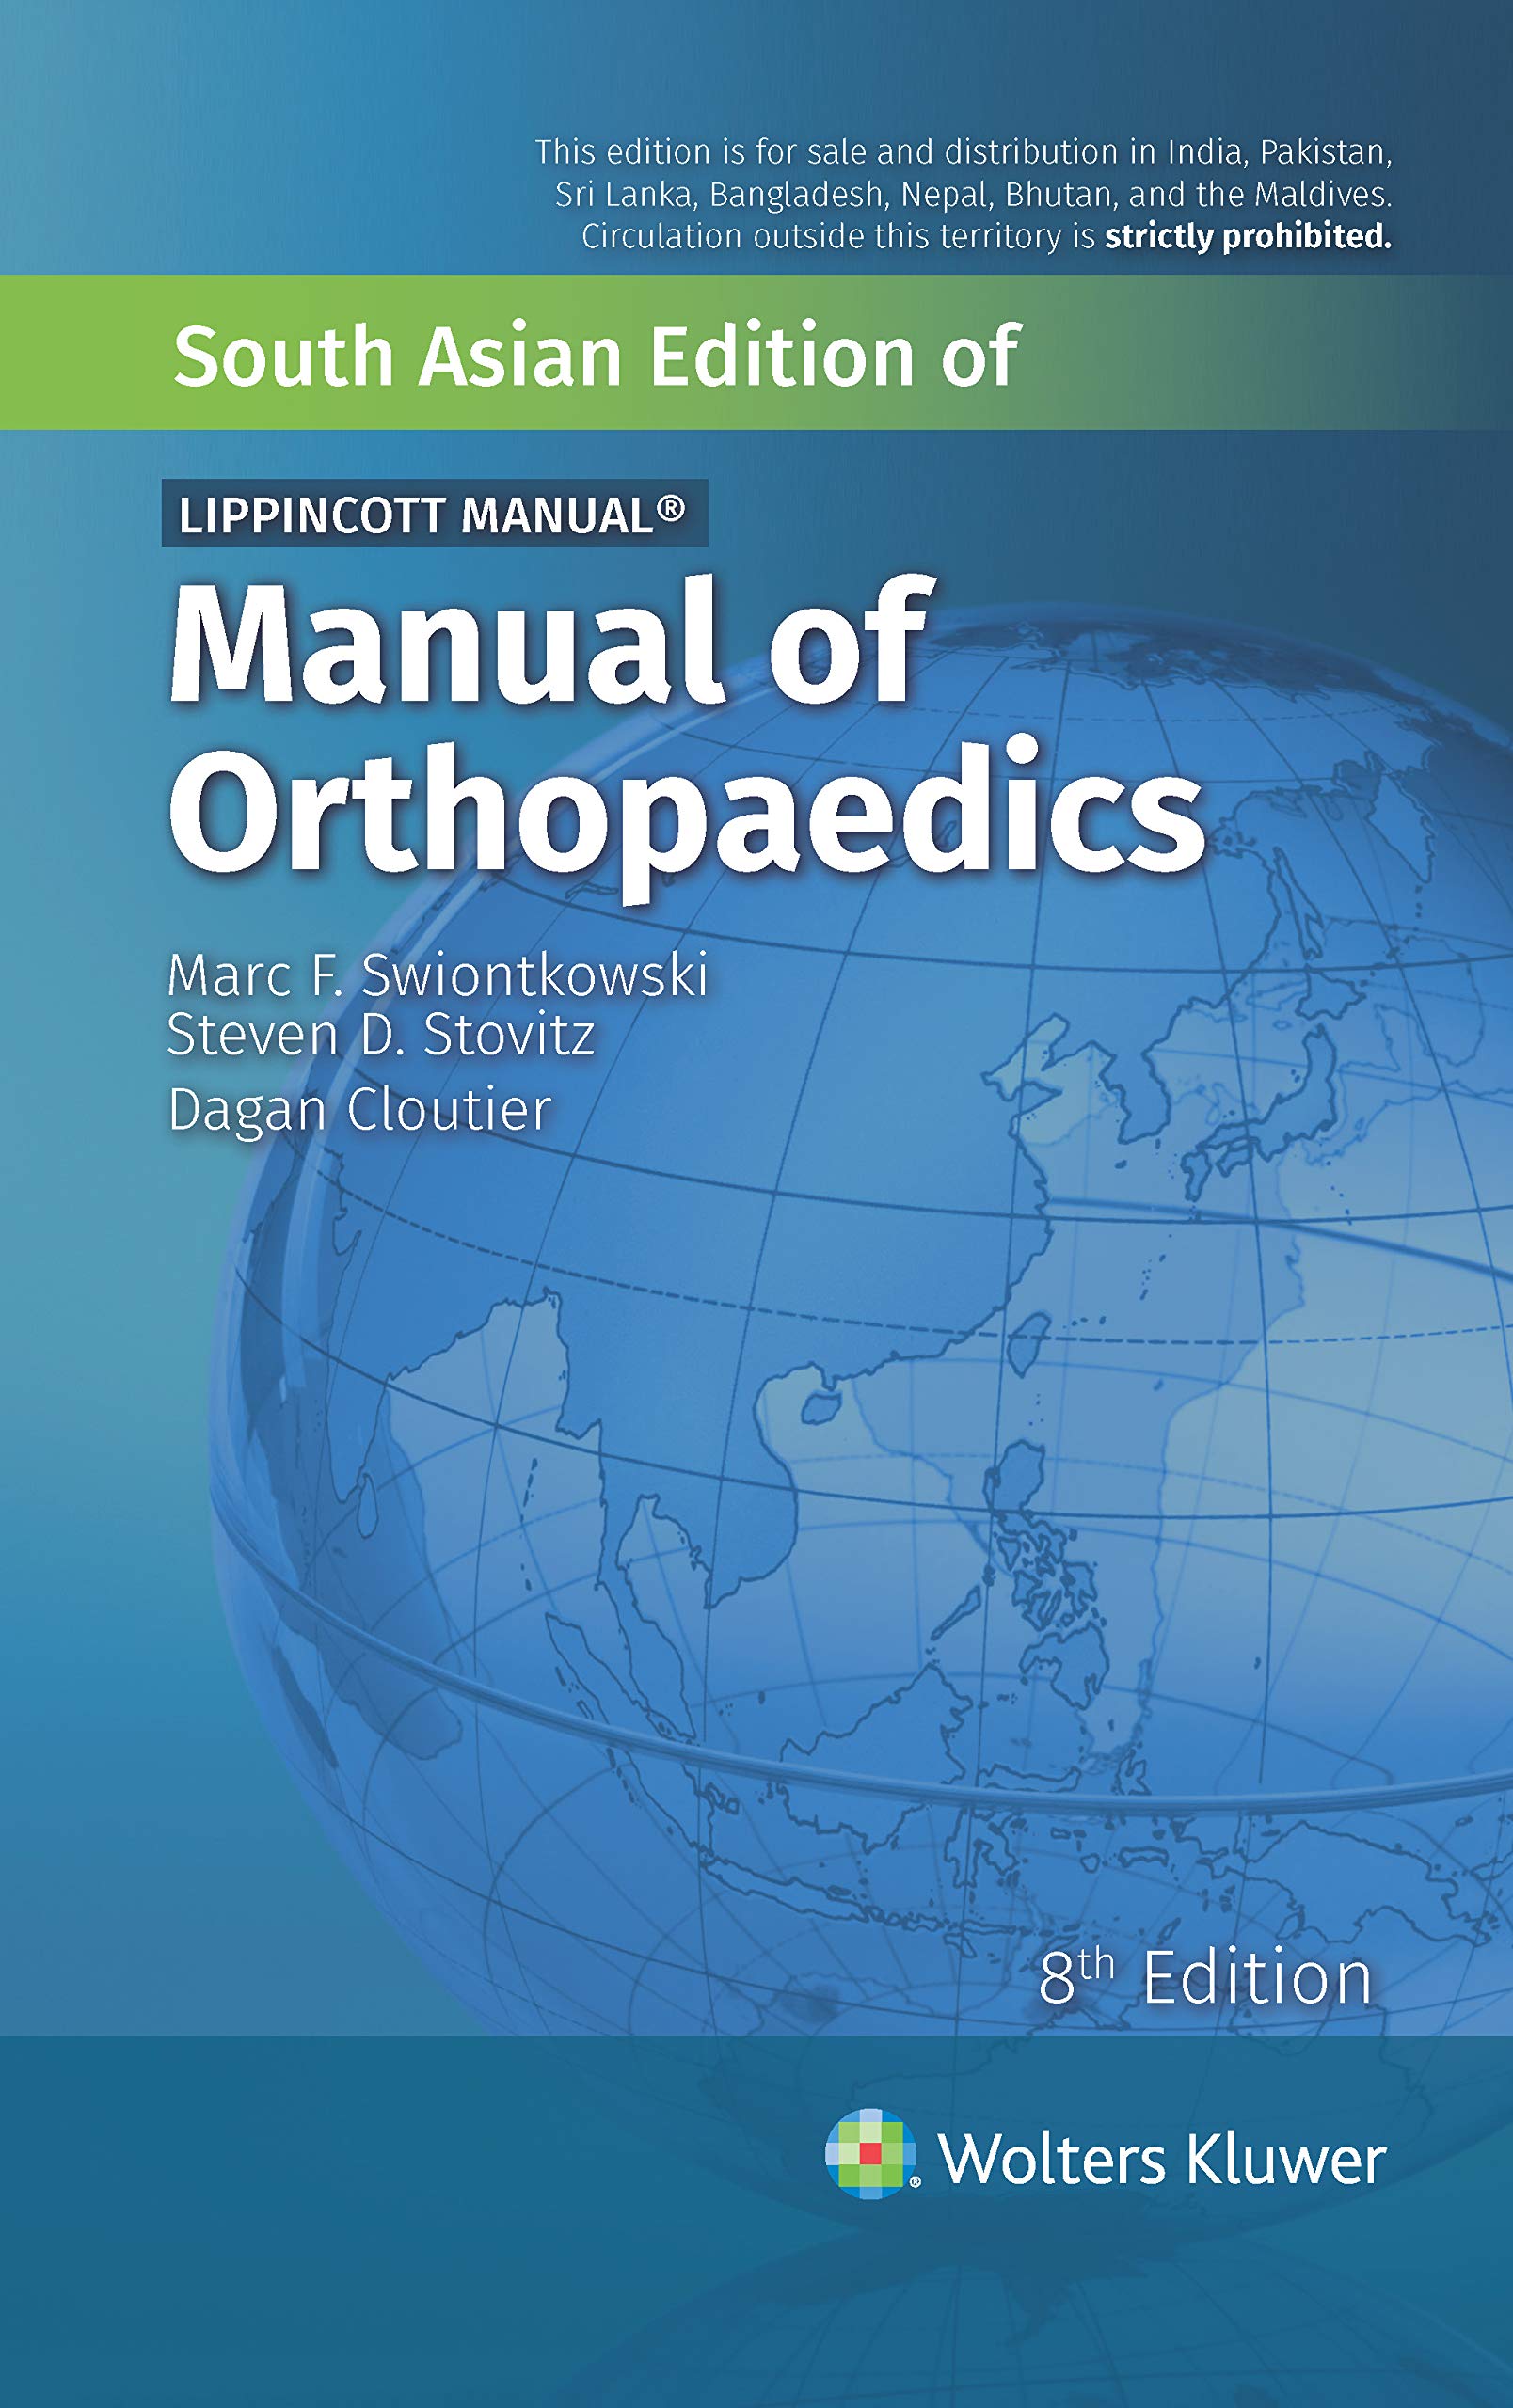 Lippincott Manual- Manual of Orthopaedics, 8/e- AIBH Exclusive